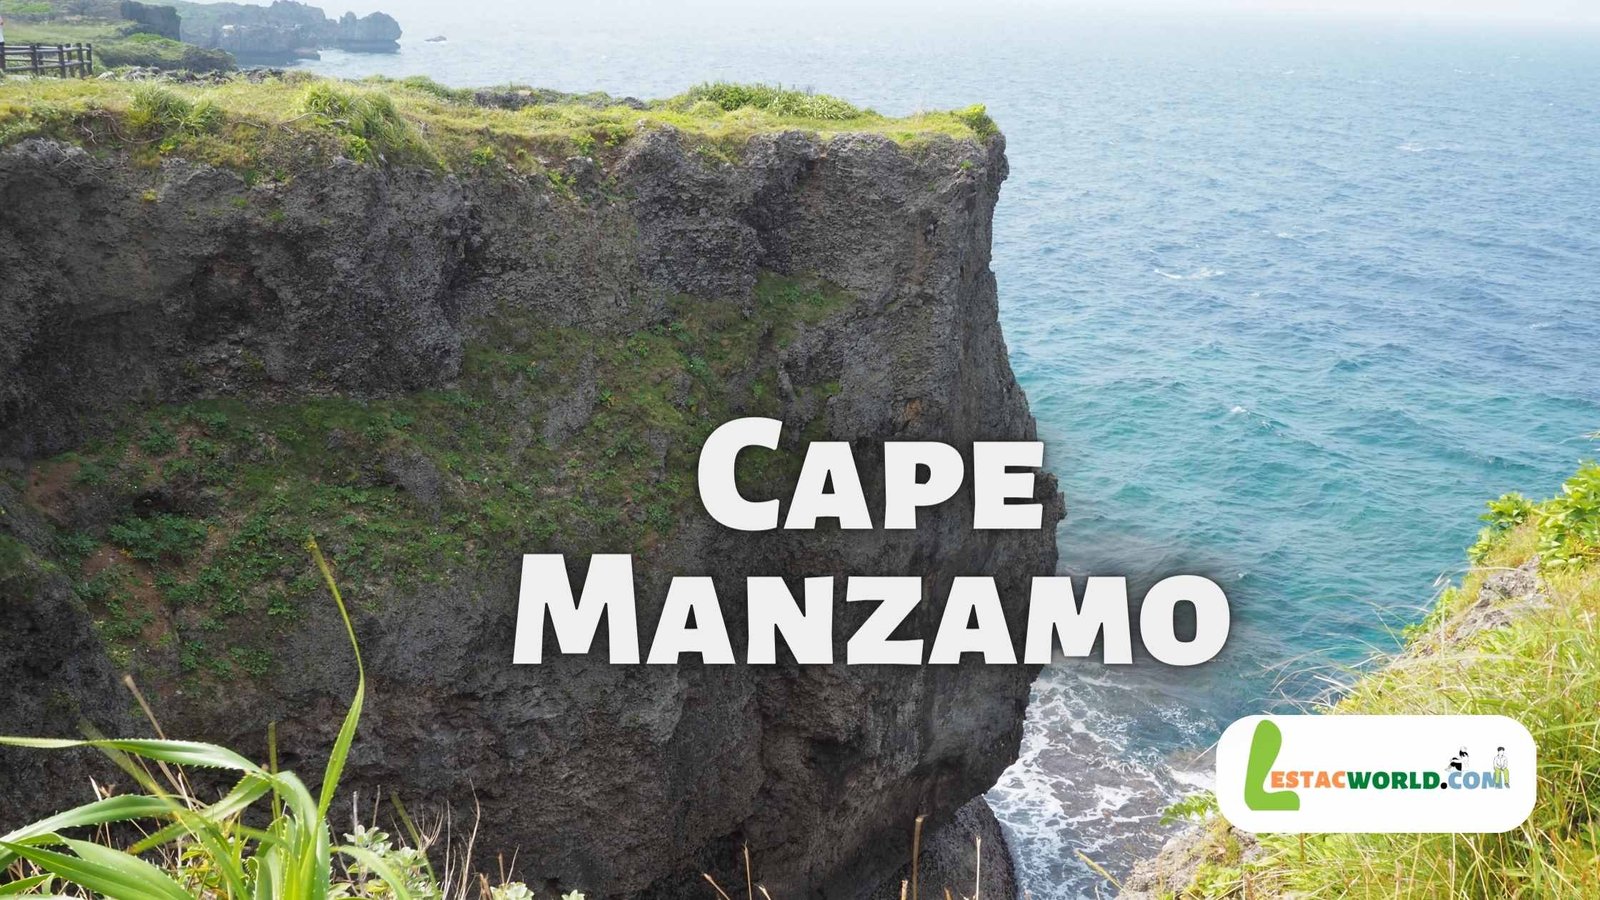 About Cape Manzamo